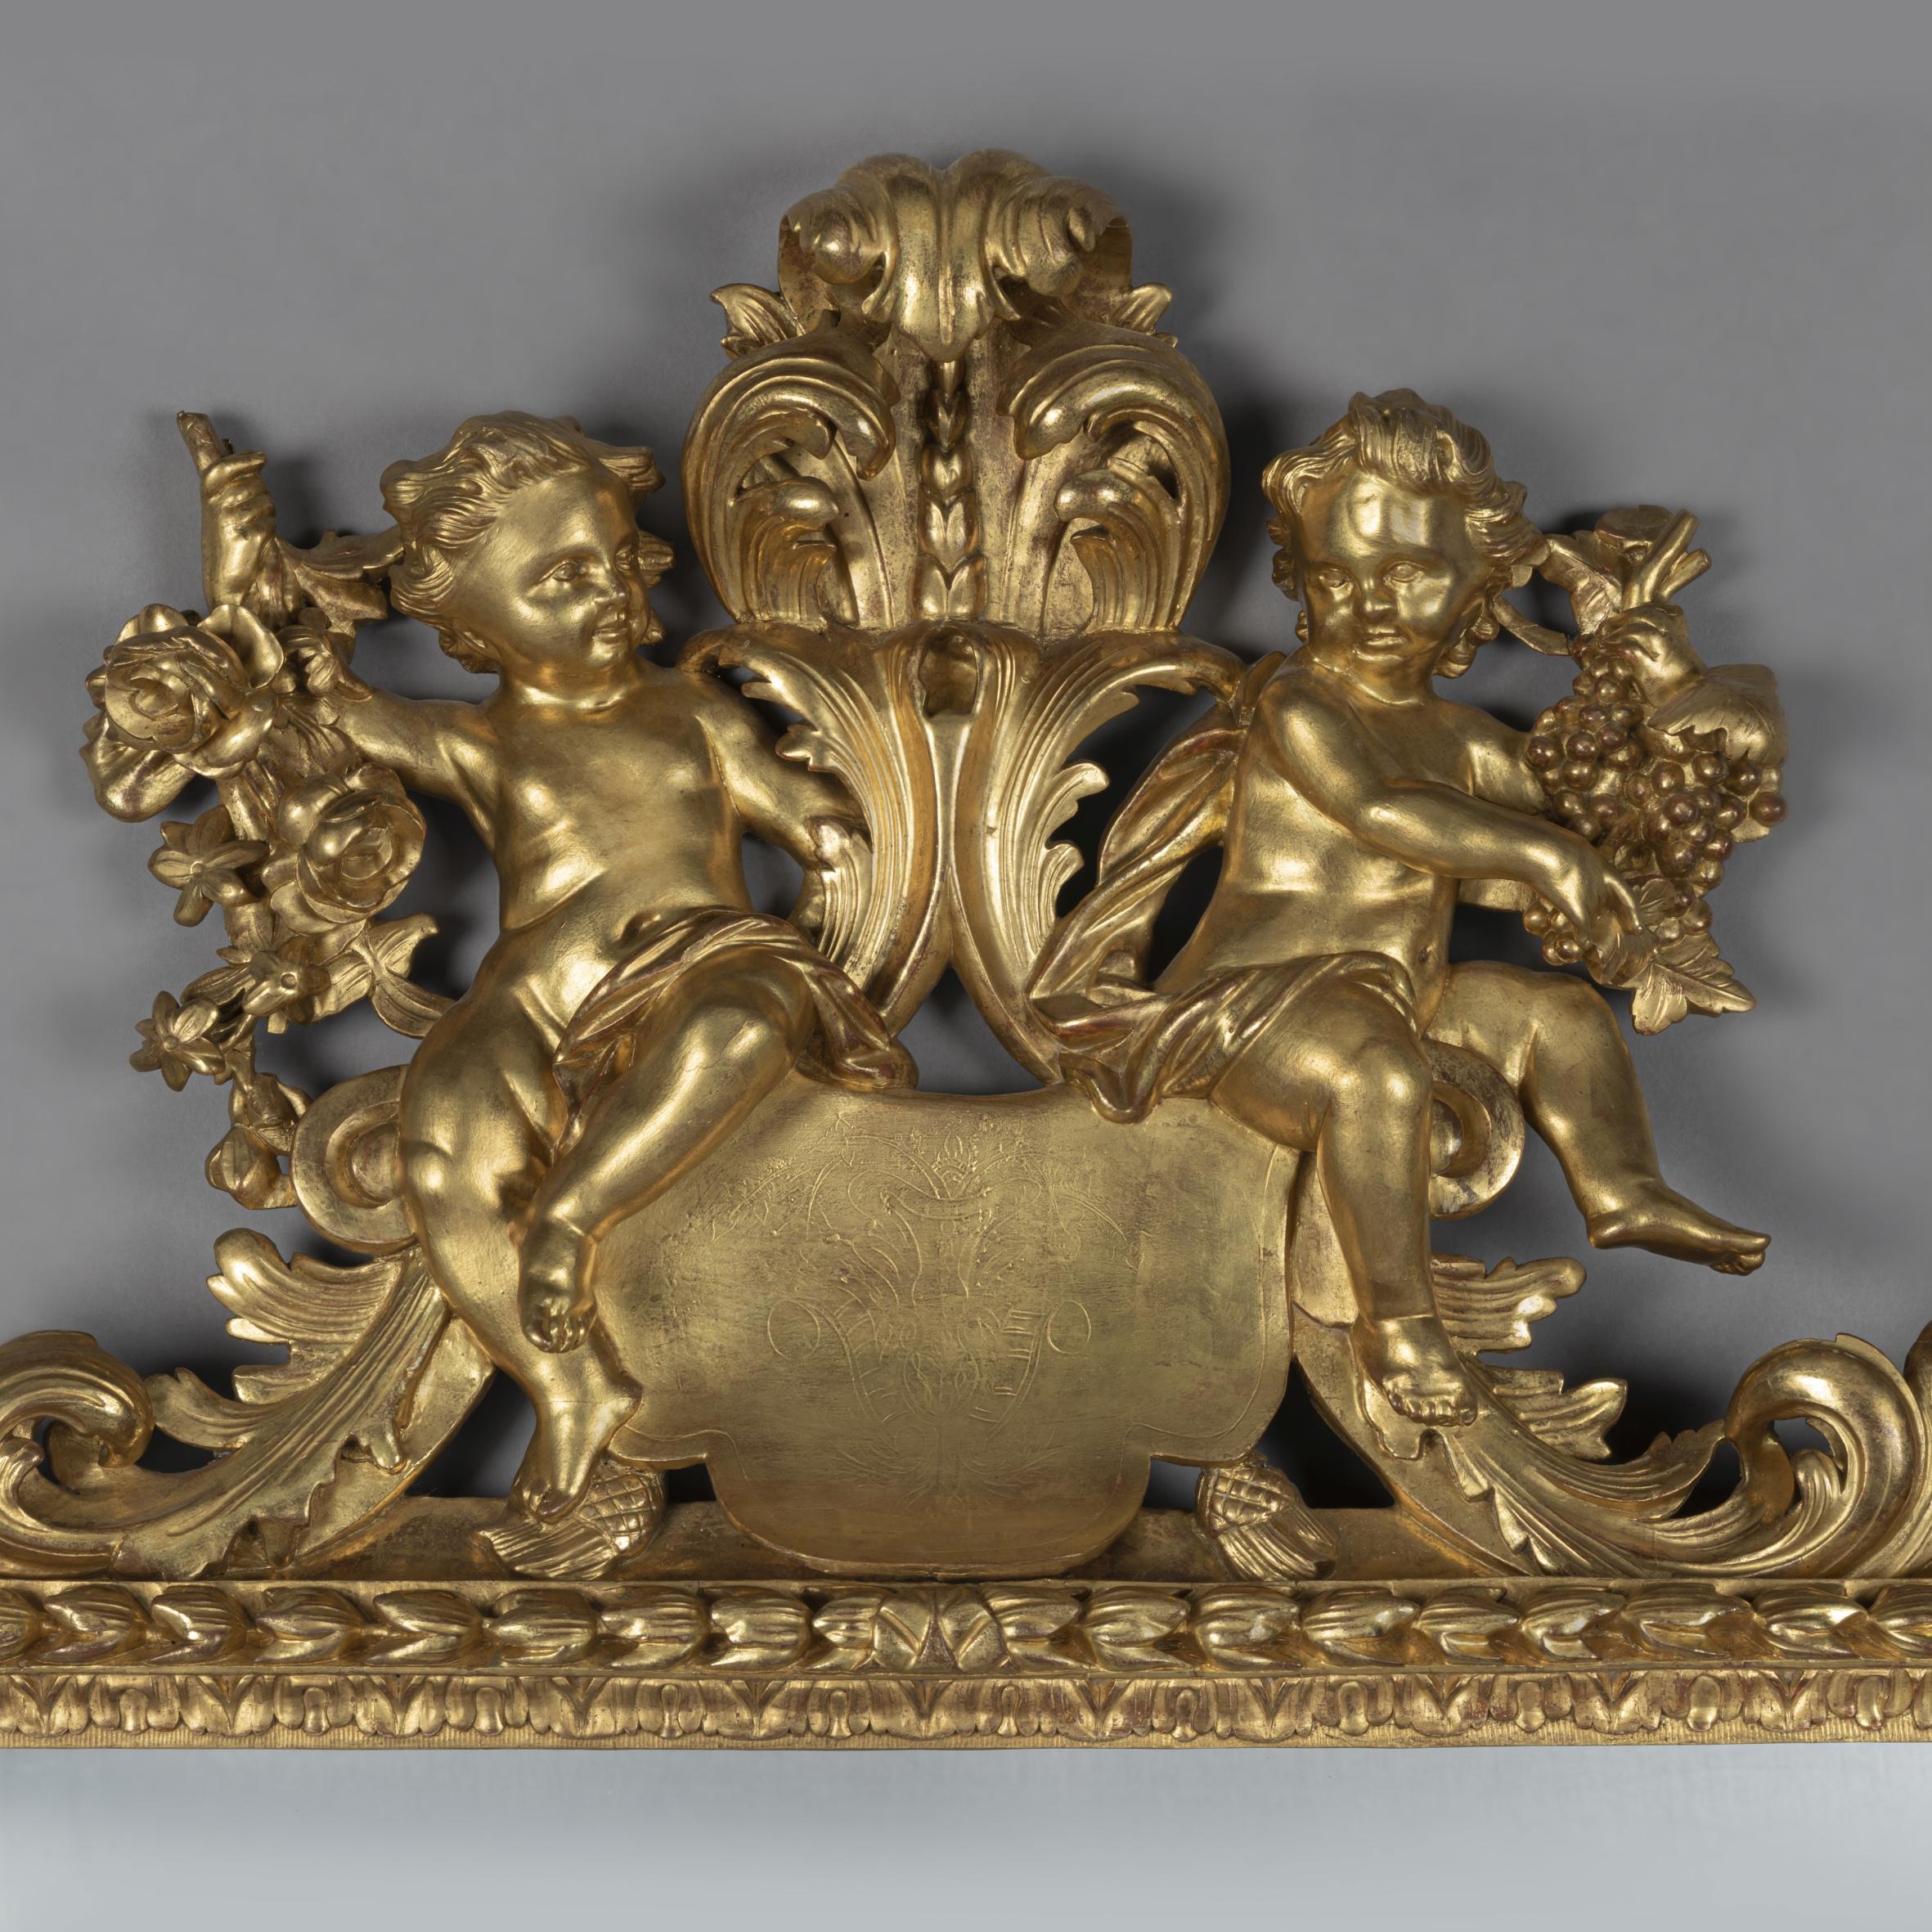 Ein feiner norditalienischer, barocker Revival-Spiegel aus geschnitztem Goldholz mit einer Allegorie der Jahreszeiten.

Dieser fein geschnitzte Spiegel hat eine rechteckige Spiegelplatte in einer Hasenglocken-Laufleiste, die von einer fein